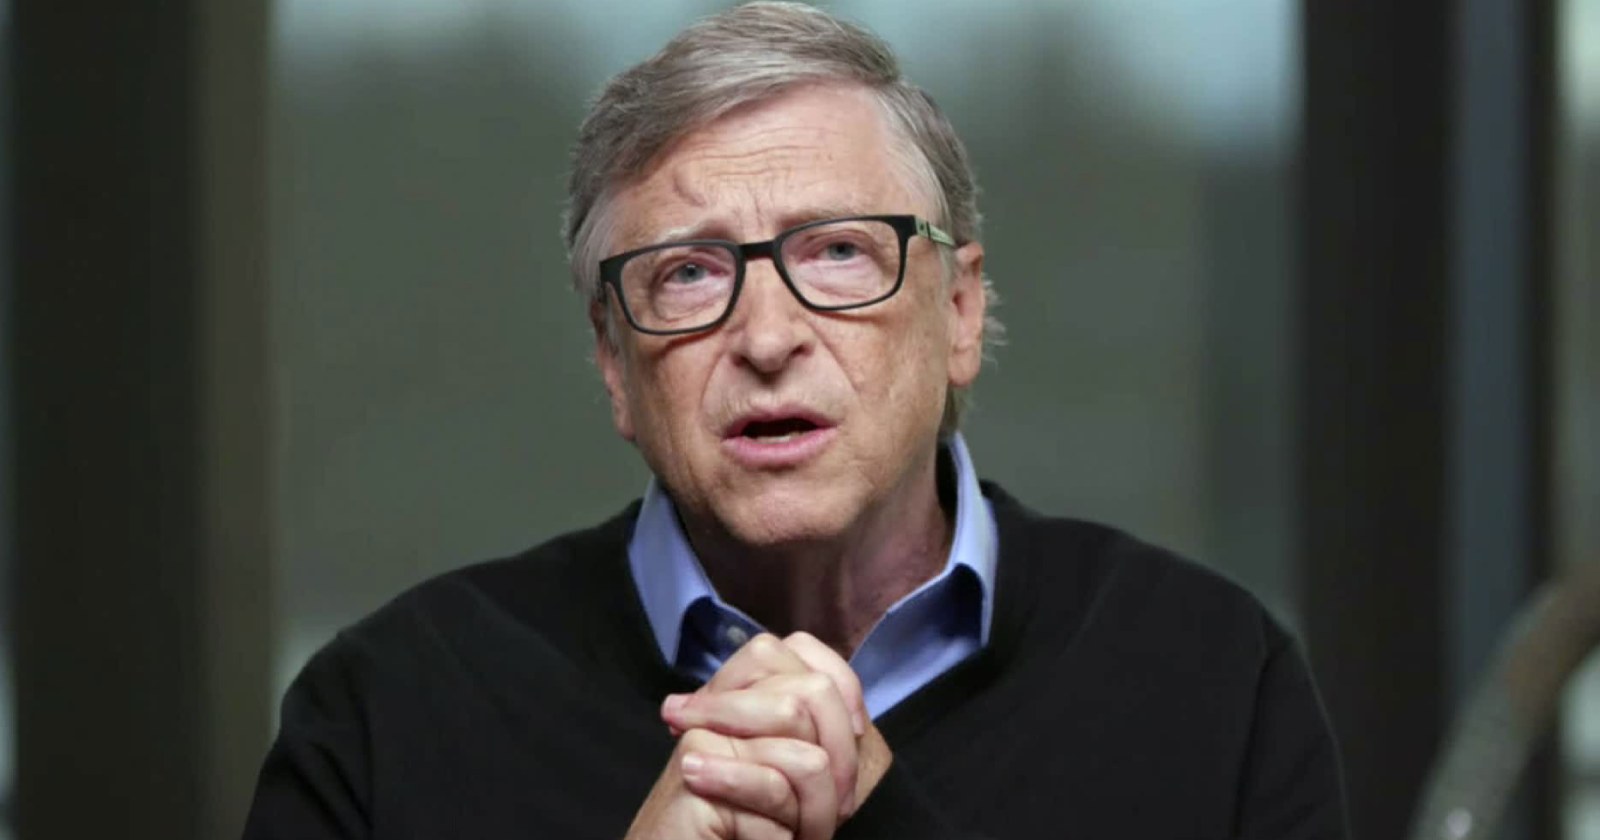 Bill Gates Jeffrey Epstein